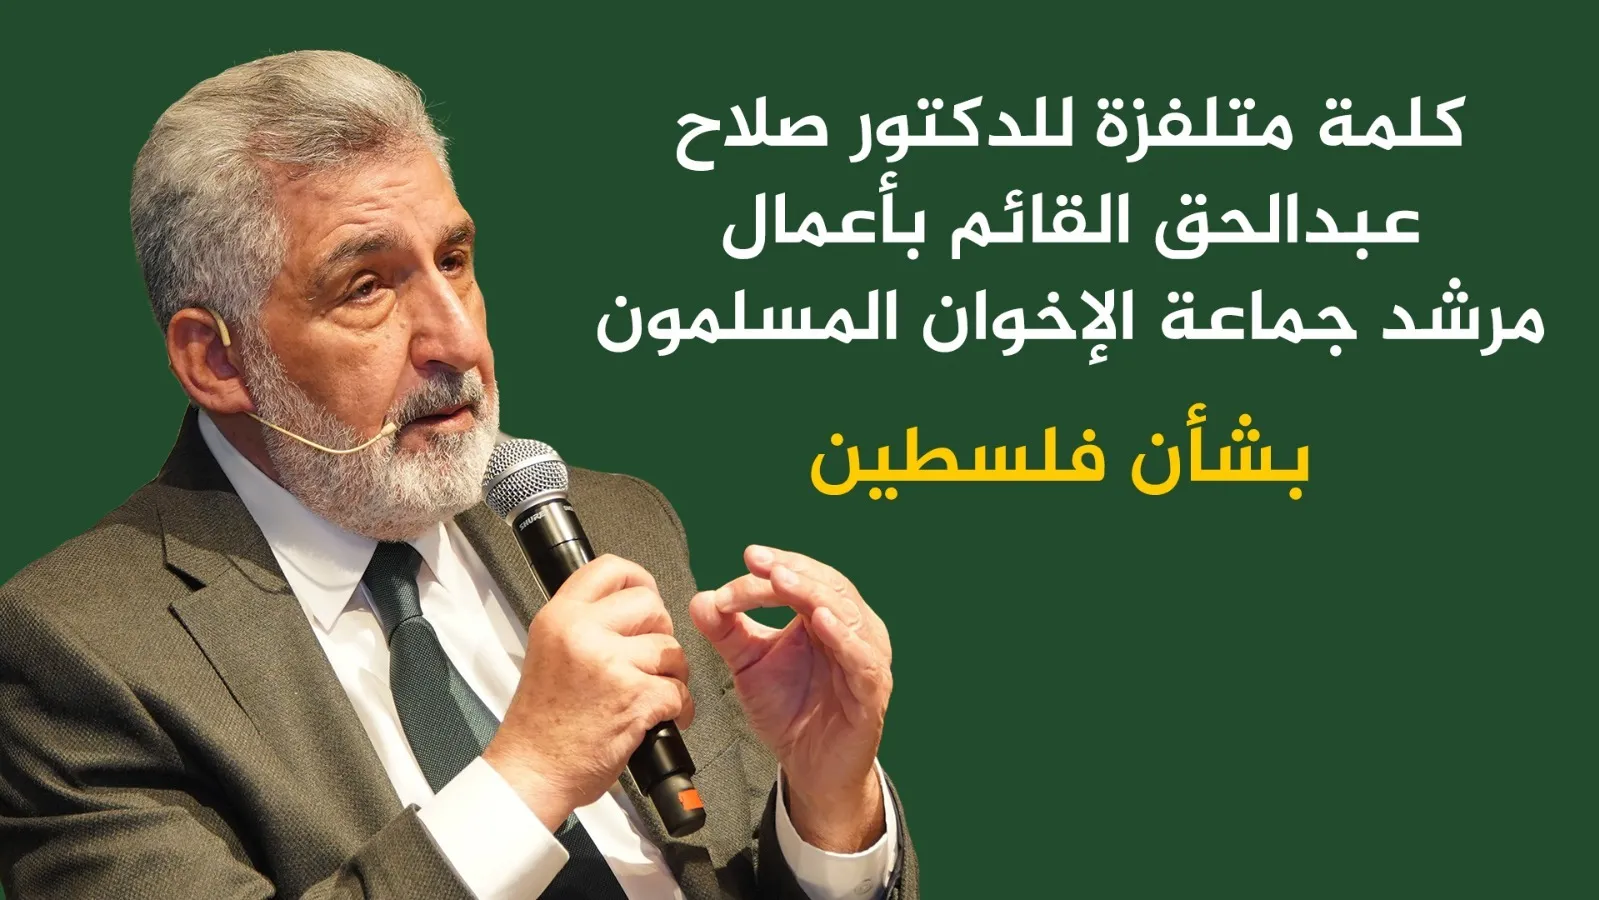 كلمة متلفزة للدكتور صلاح عبد الحق القائم بأعمال جماعة الاخوان المسلمون بشأن فلسطين